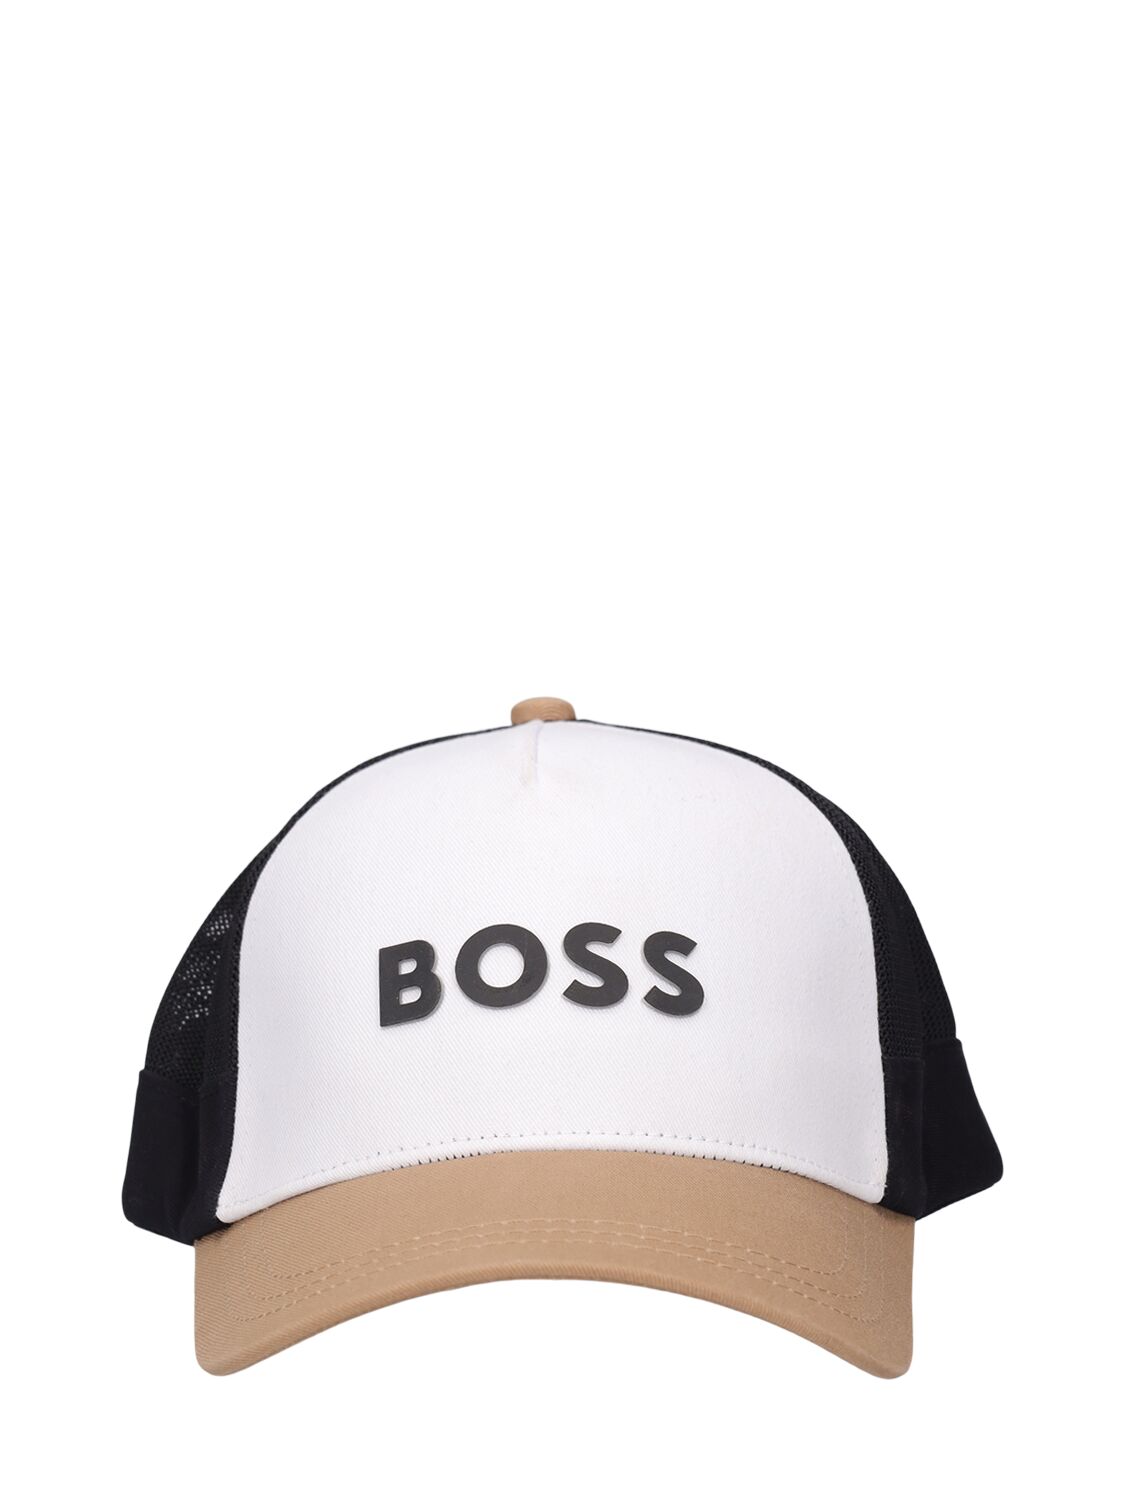 Hugo Boss Kids' Cotton Twill & Mesh Baseball Hat In White,beige